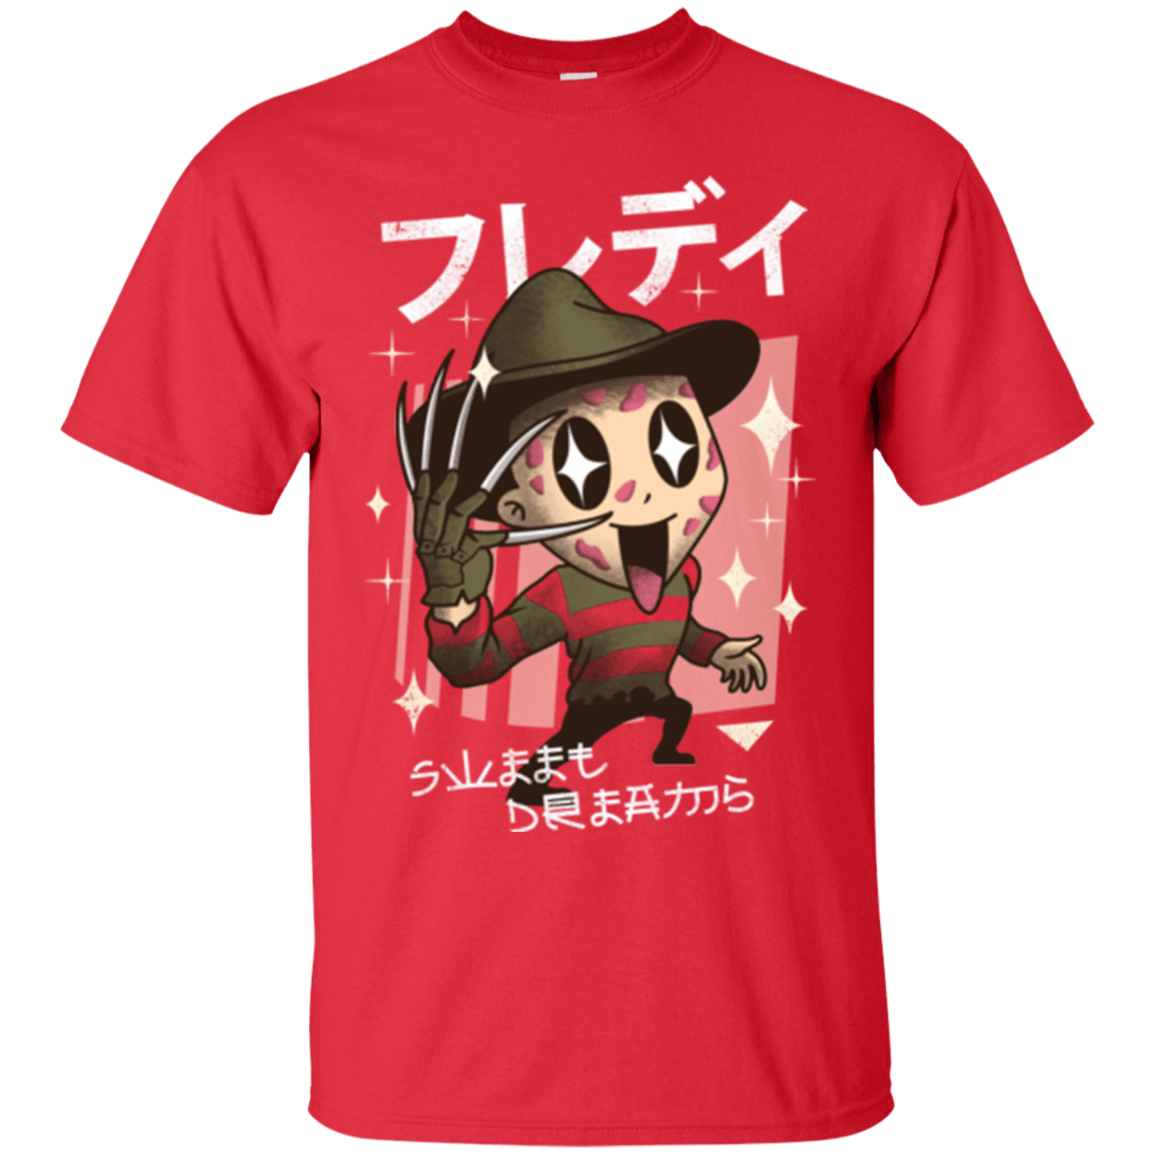 T-Shirts Red / Small Kawaii Dreams T-Shirt